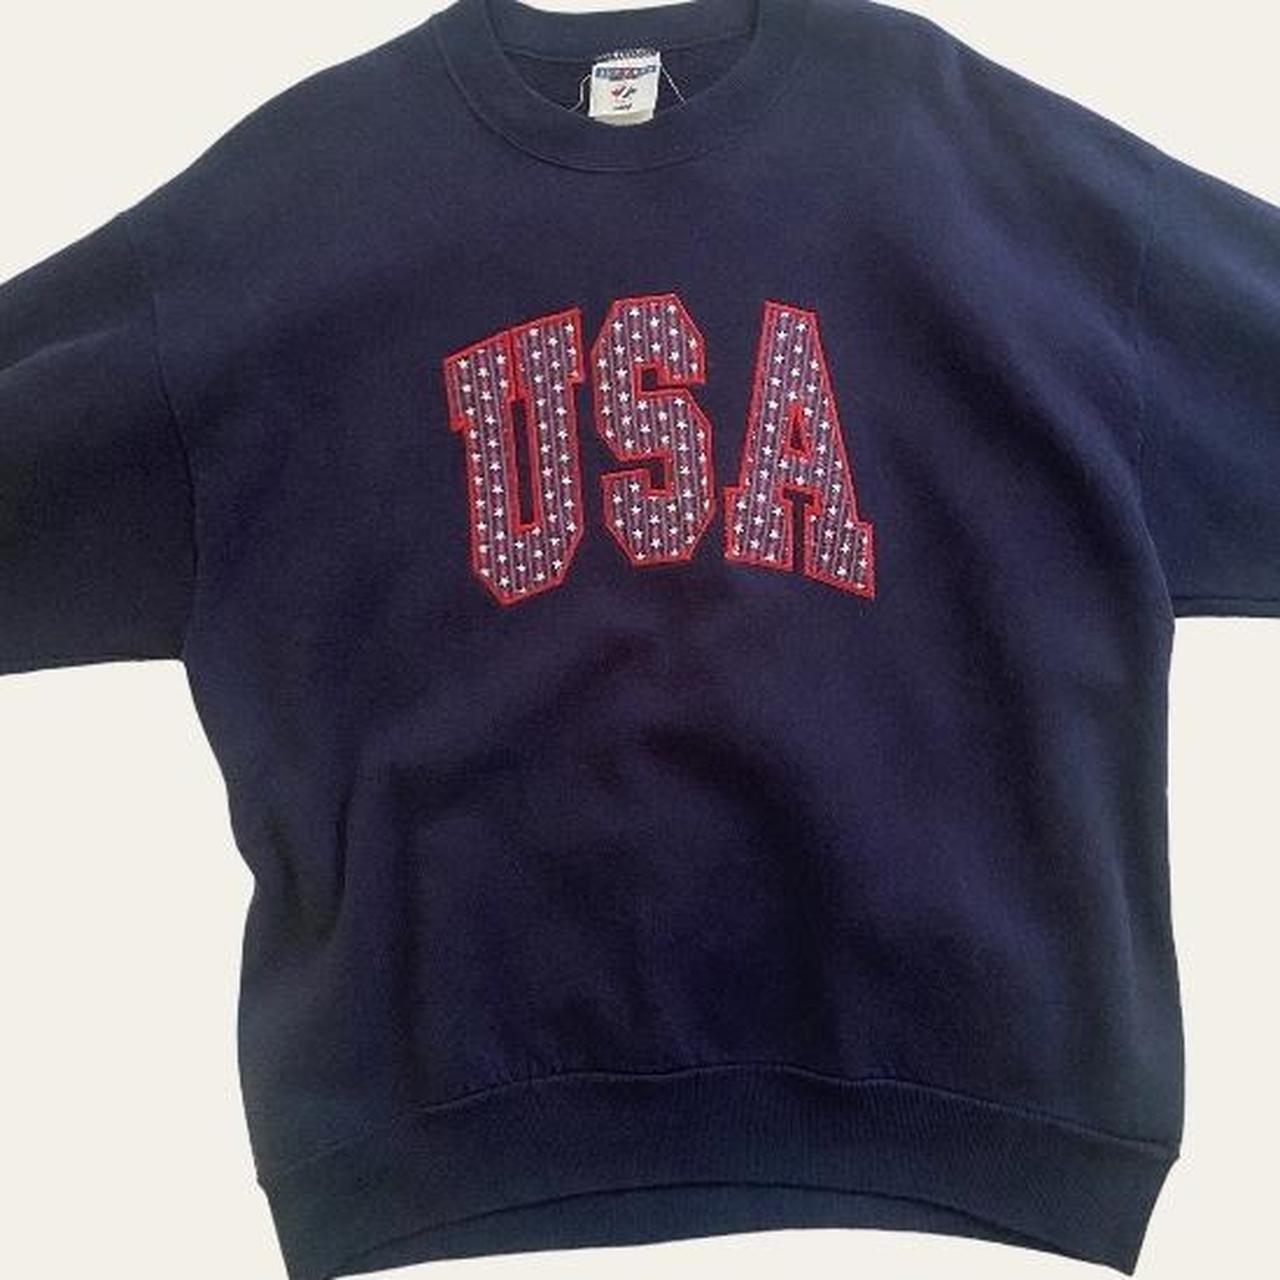 USA oversized sweatshirt ☆*: size large ☆*: no... - Depop